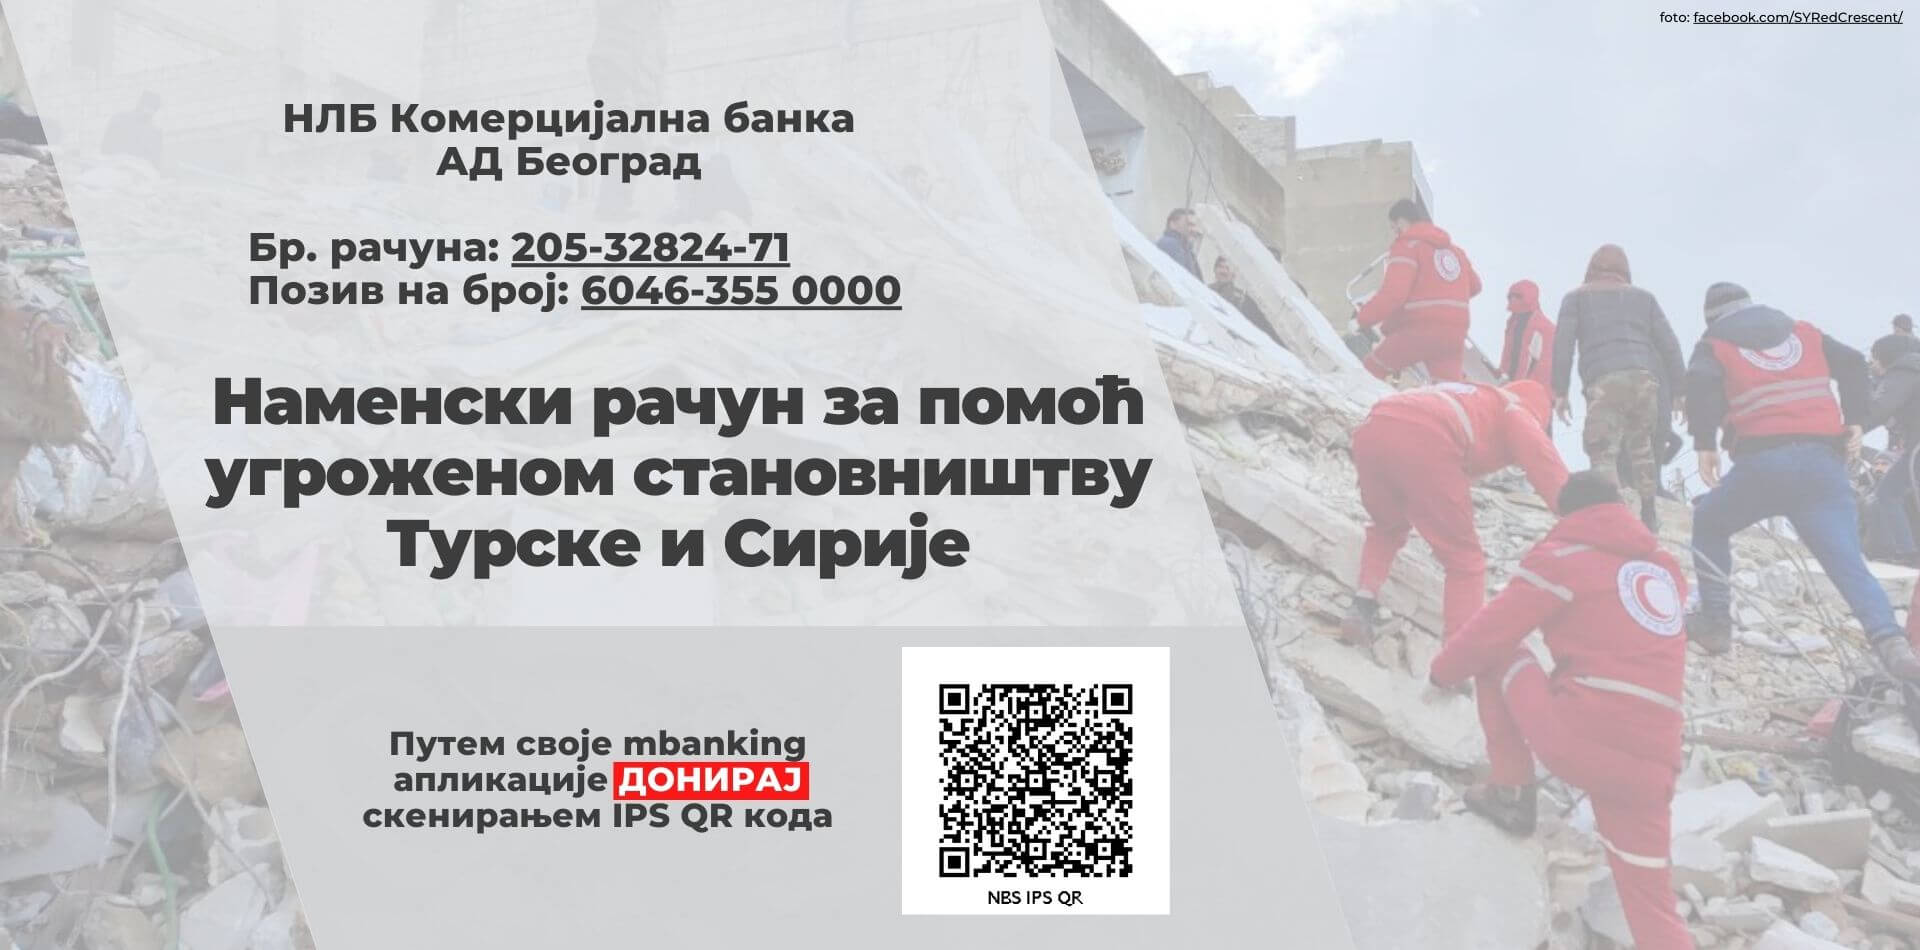 Турска и Сирија земљотрес, донација